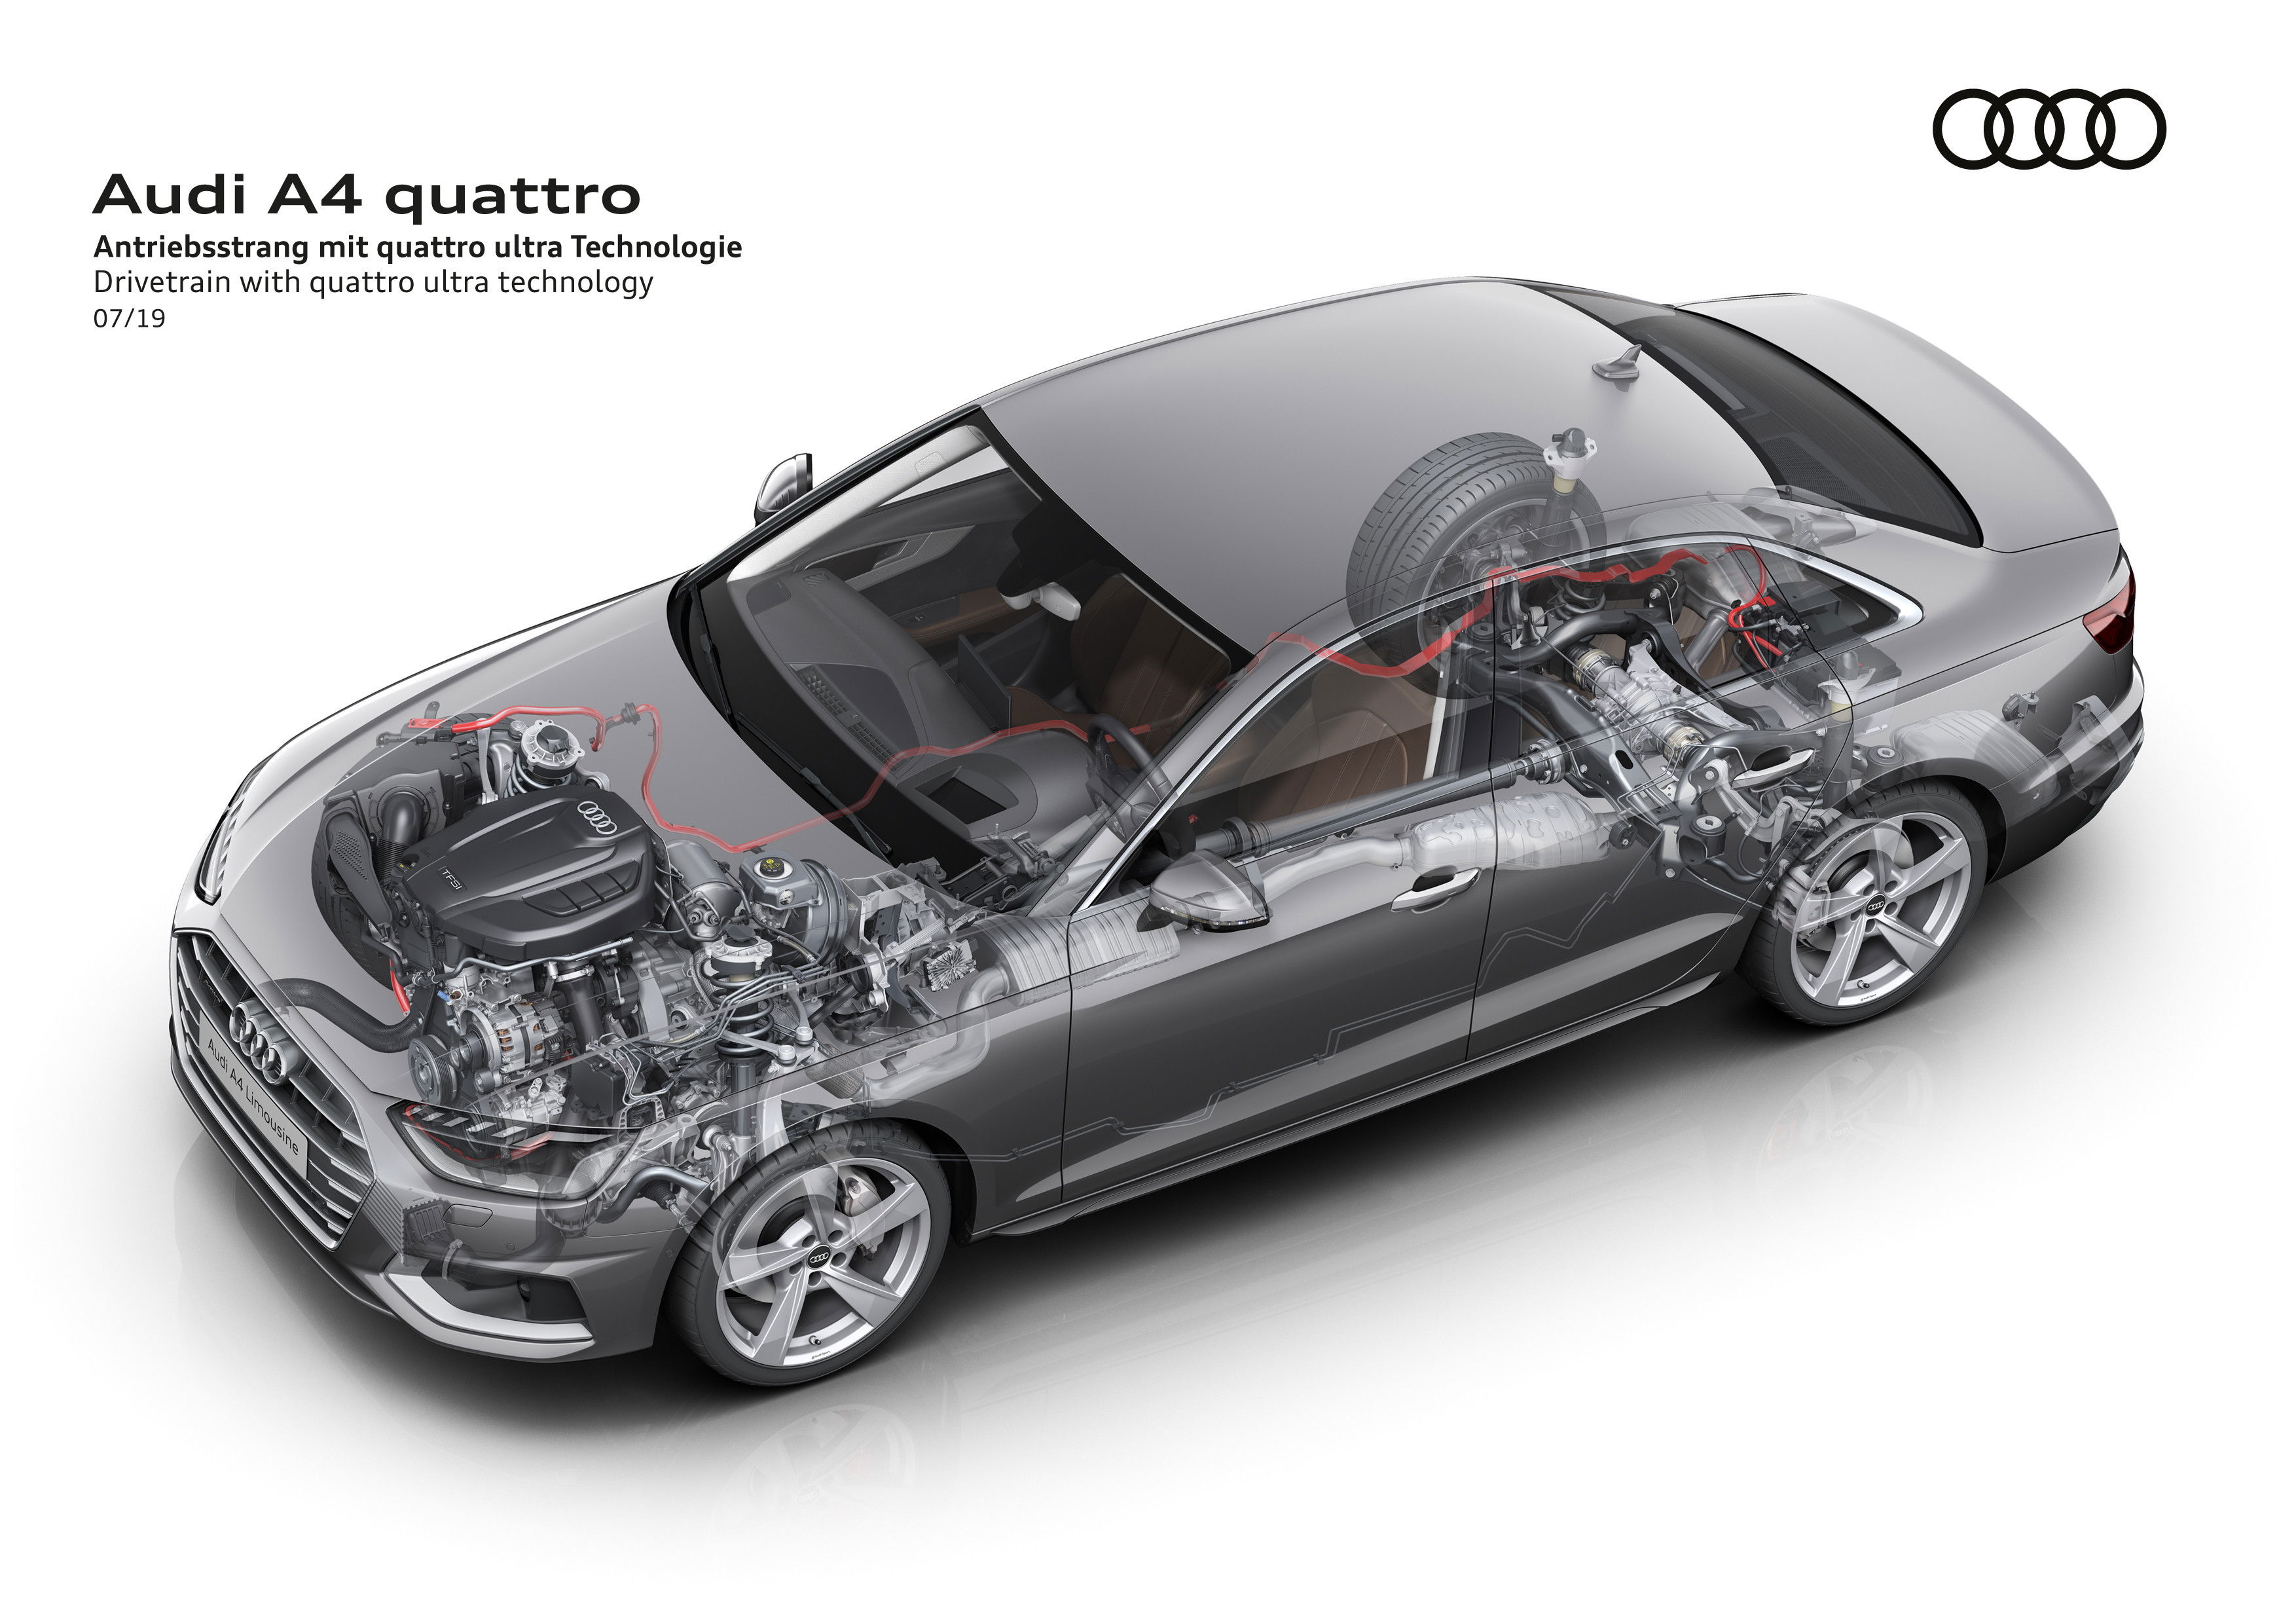 2023 Audi A4 sedan engine and performance Via Audi